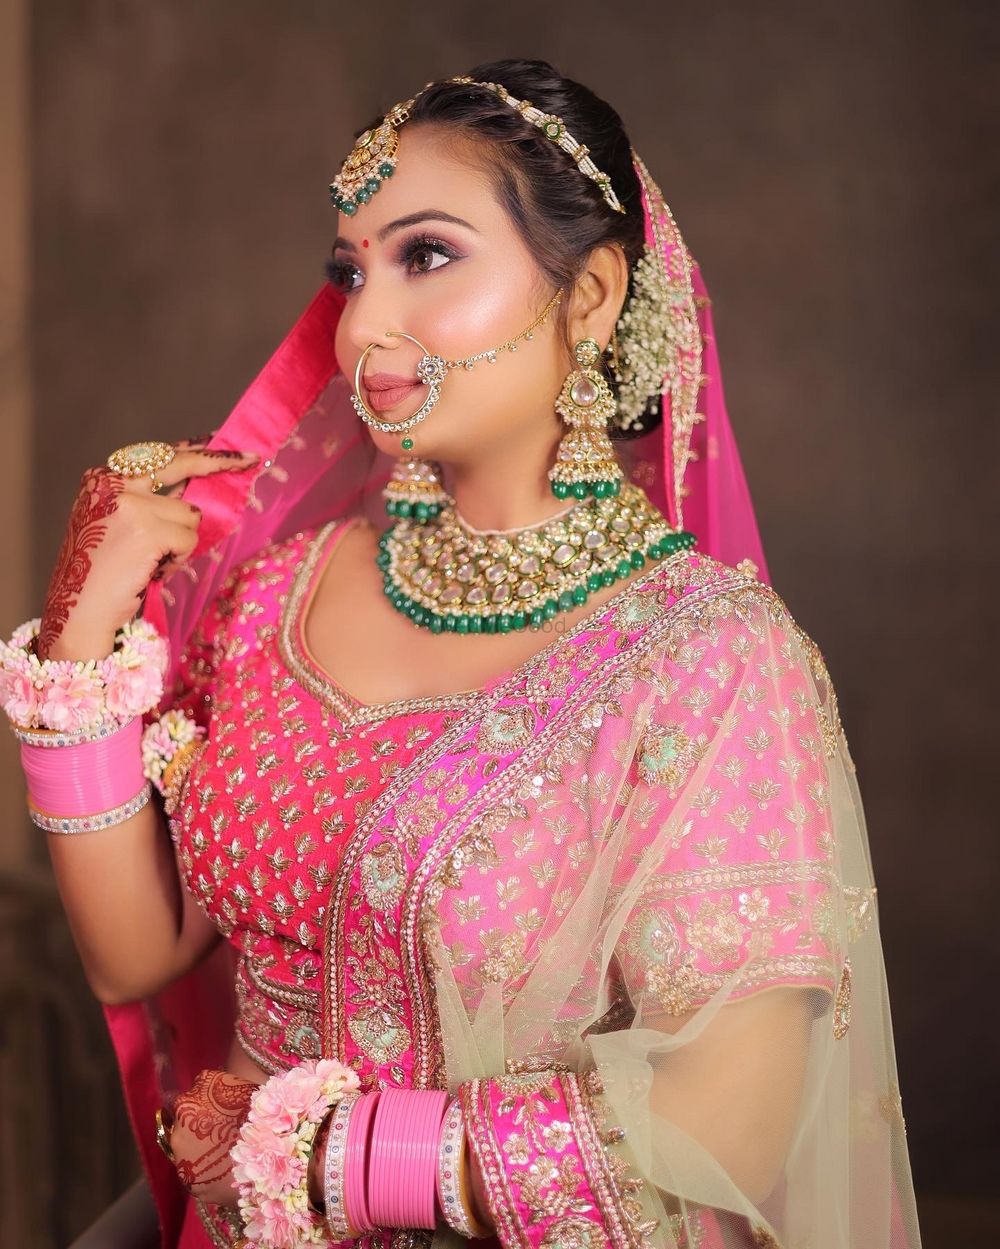 Photo By Jaipur Makeup Artist Lakshiyata - Bridal Makeup